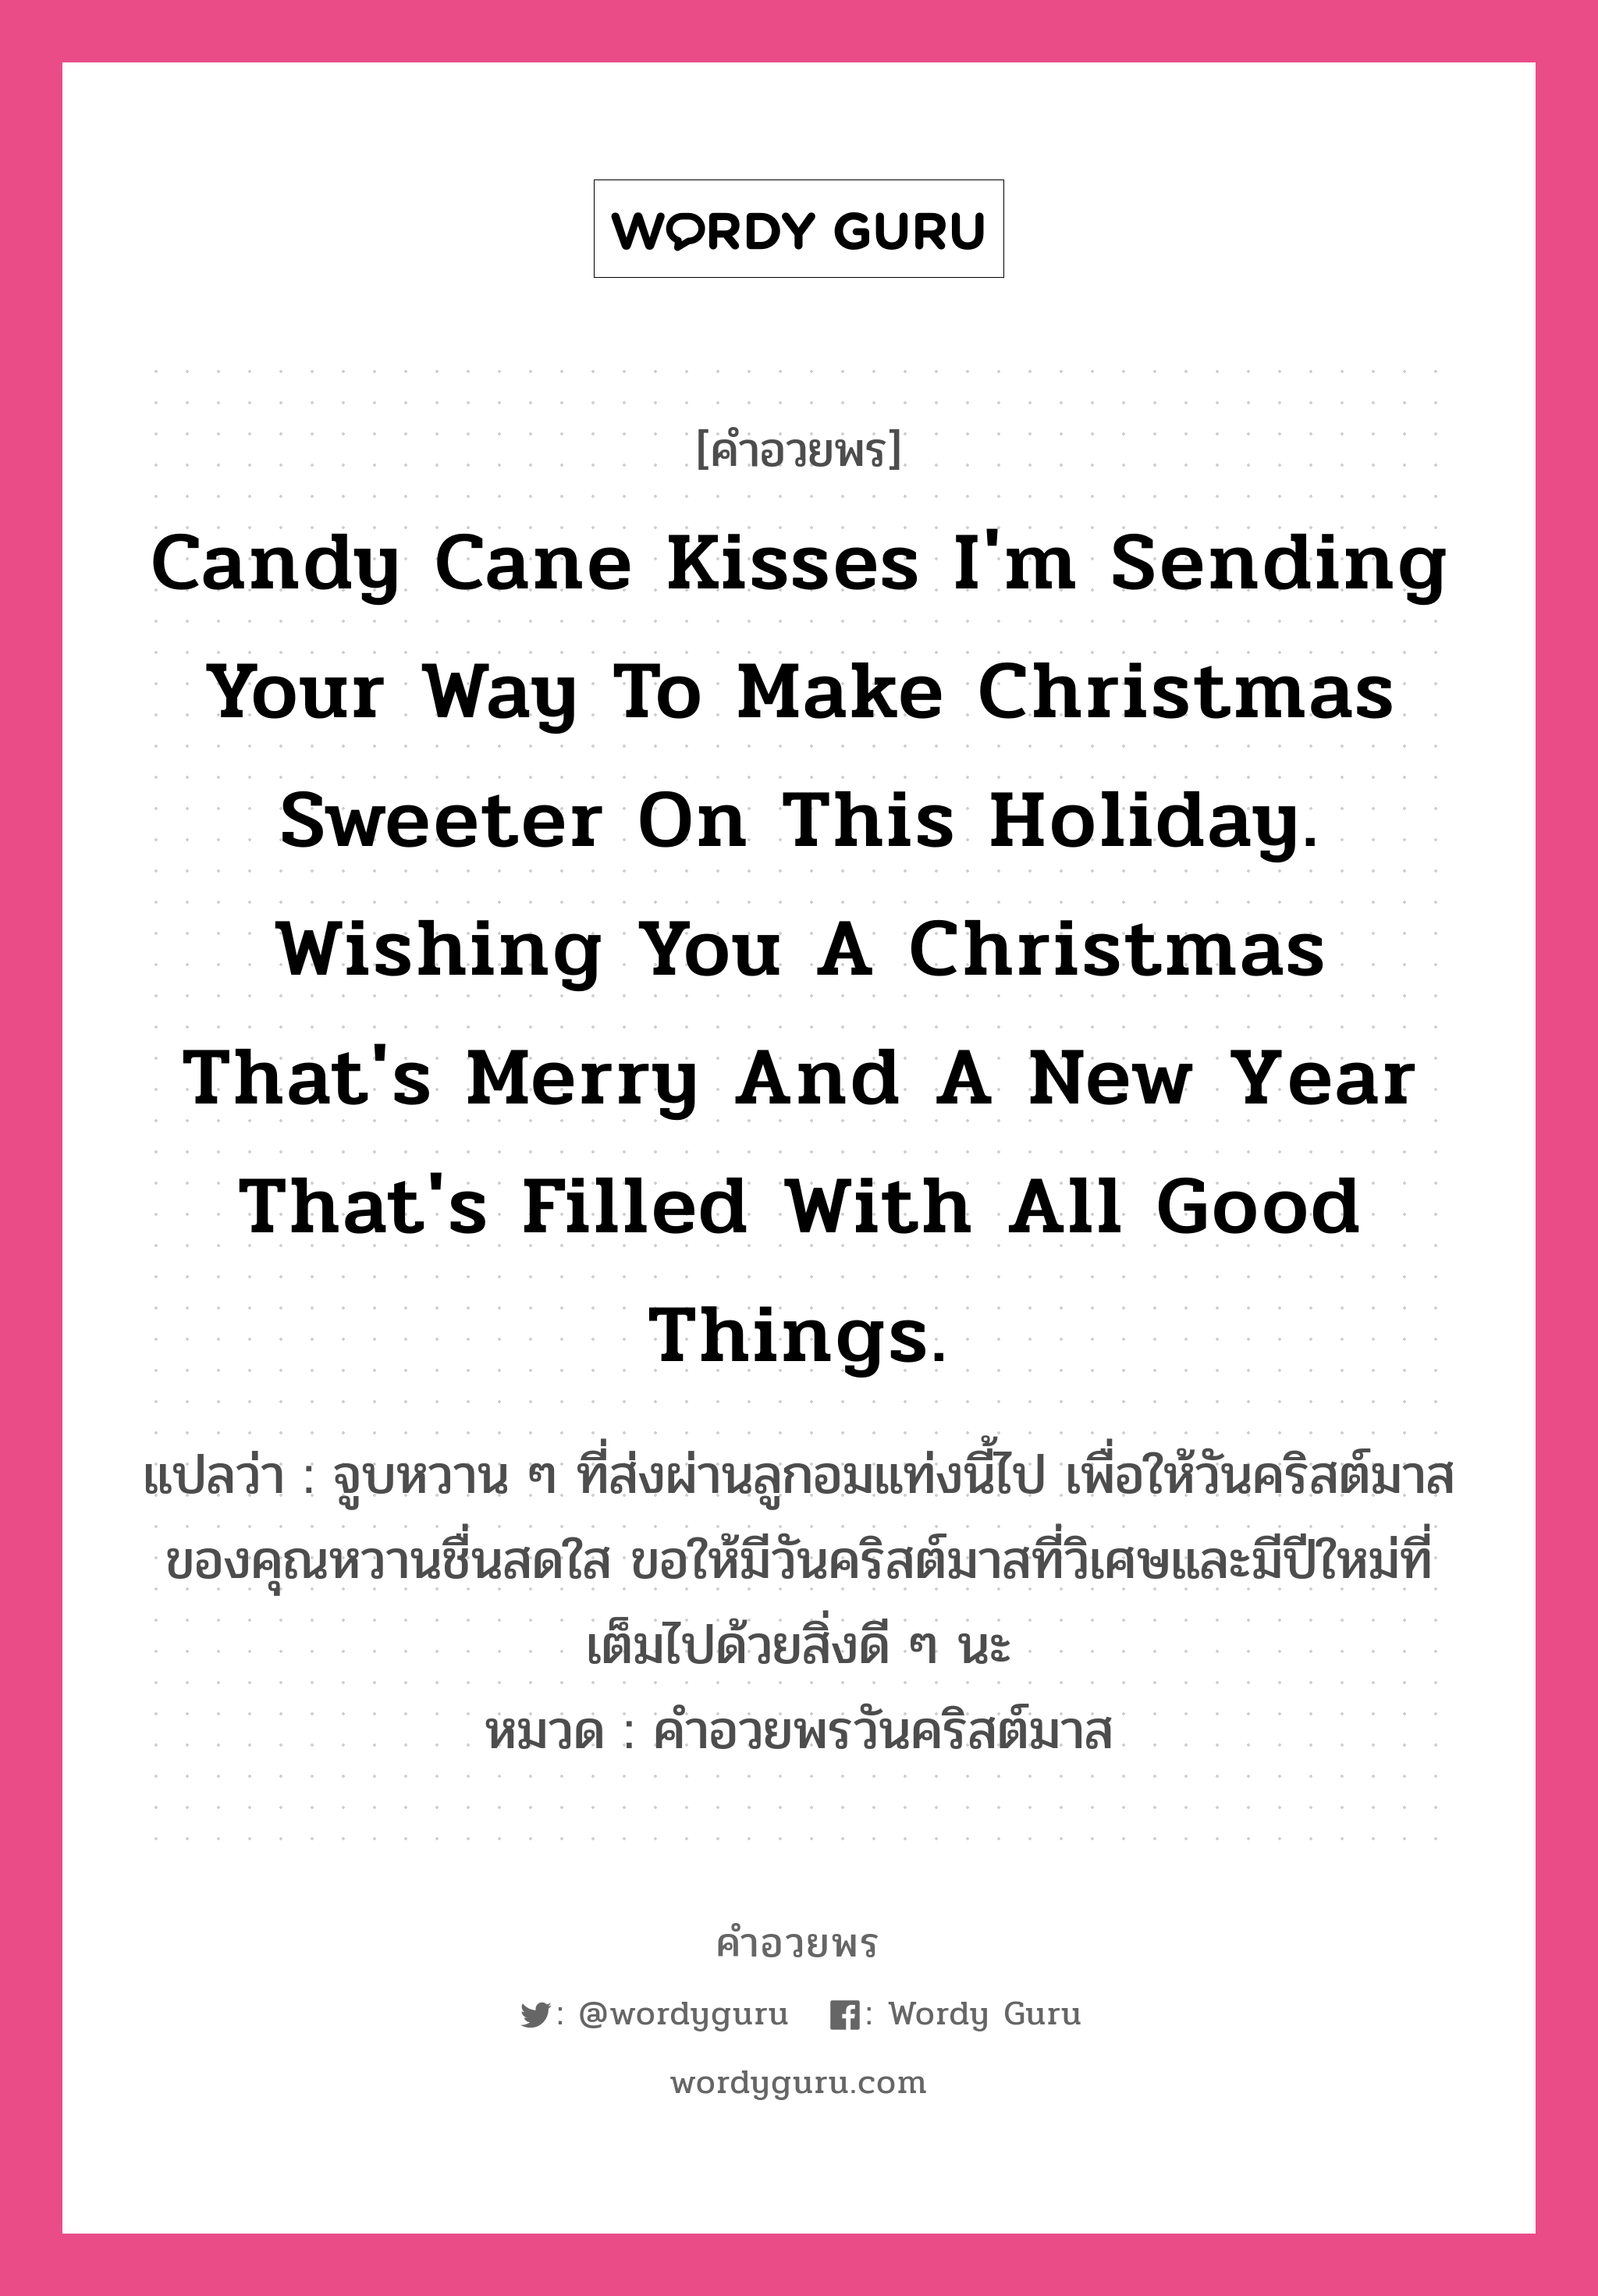 คำอวยพร Candy cane kisses I'm sending your way to make Christmas sweeter on this holiday. Wishing you a Christmas that's merry and a new year that's filled with all good things. คืออะไร?, แปลว่า จูบหวาน ๆ ที่ส่งผ่านลูกอมแท่งนี้ไป เพื่อให้วันคริสต์มาสของคุณหวานชื่นสดใส ขอให้มีวันคริสต์มาสที่วิเศษและมีปีใหม่ที่เต็มไปด้วยสิ่งดี ๆ นะ หมวด คำอวยพรวันคริสต์มาส หมวด คำอวยพรวันคริสต์มาส